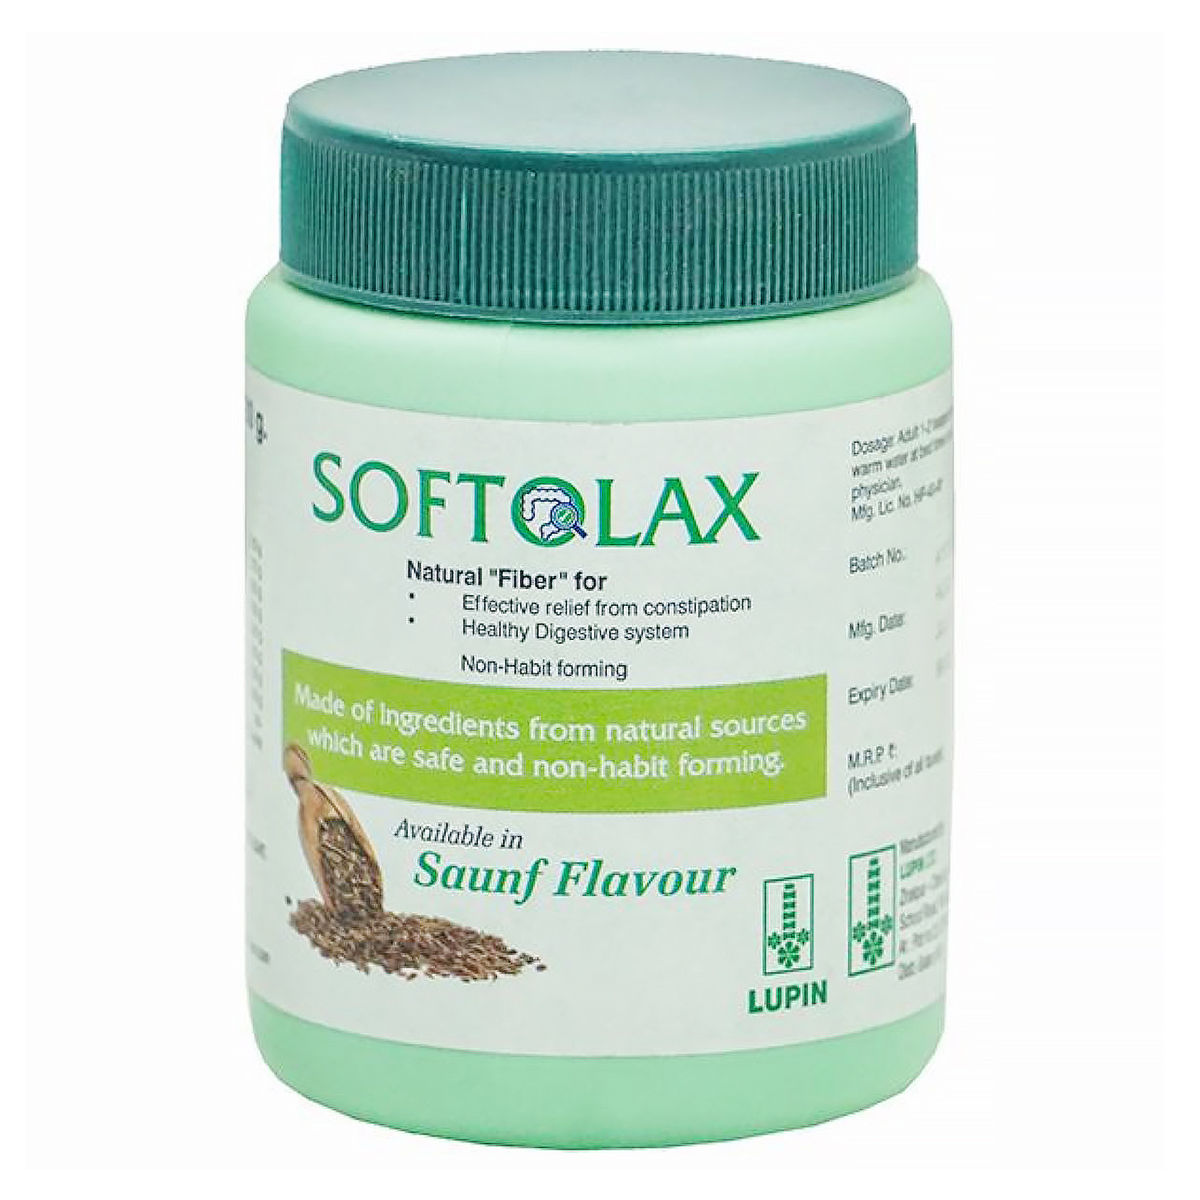 Buy Softolax Saunf Flavour Powder, 100 gm Online